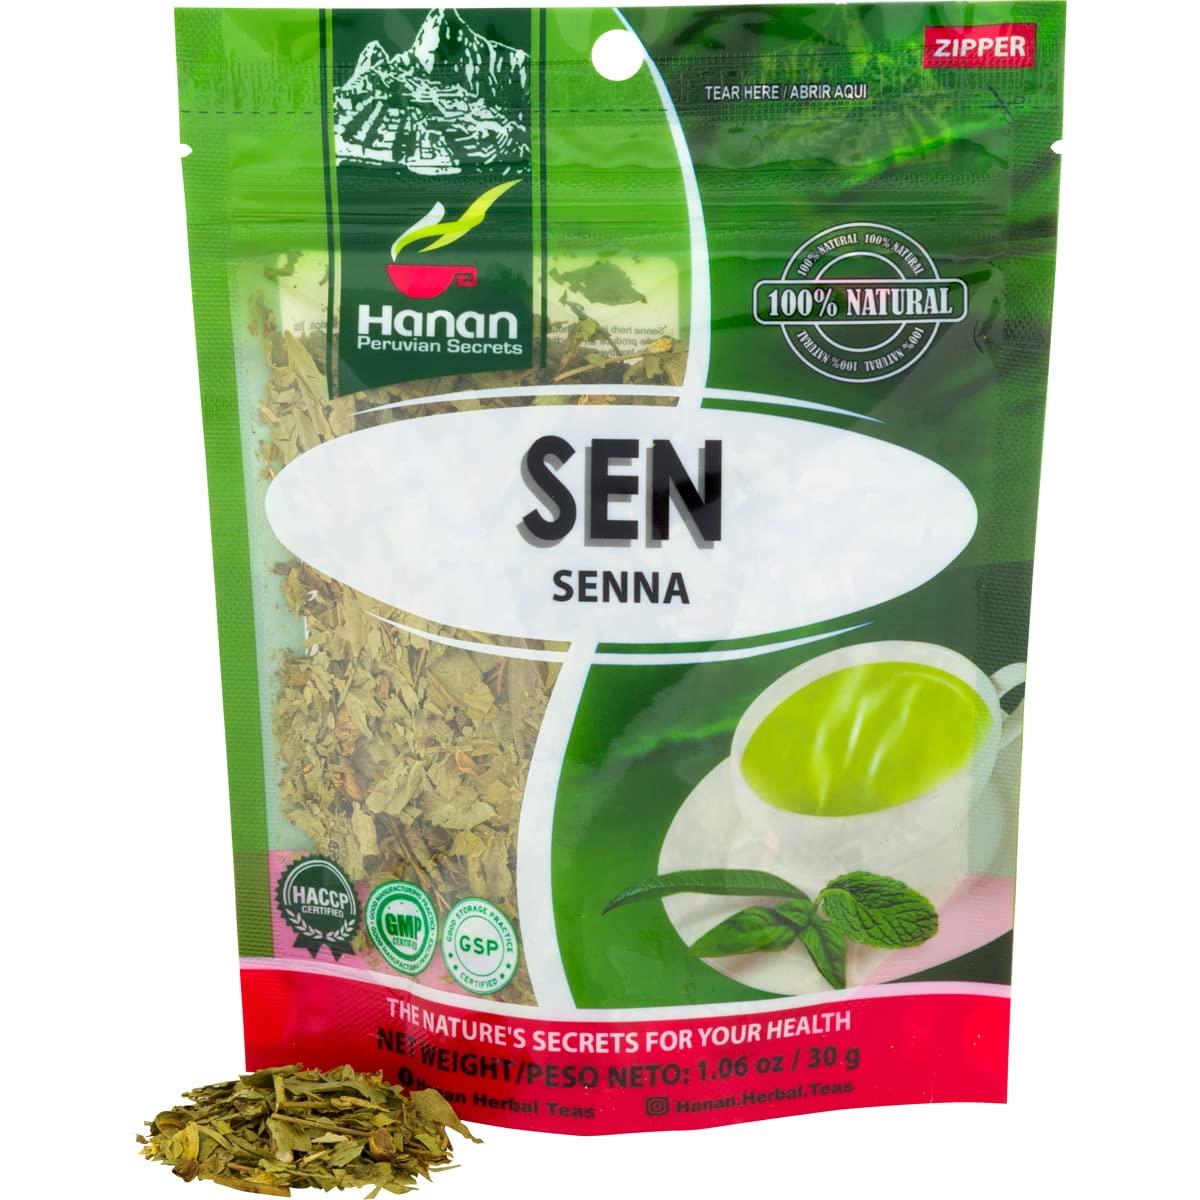 Senna Loose Leaf Herbal Tea 1.1oz – 30g Dried Herb Wooly Sen Plant Leaves from Peru